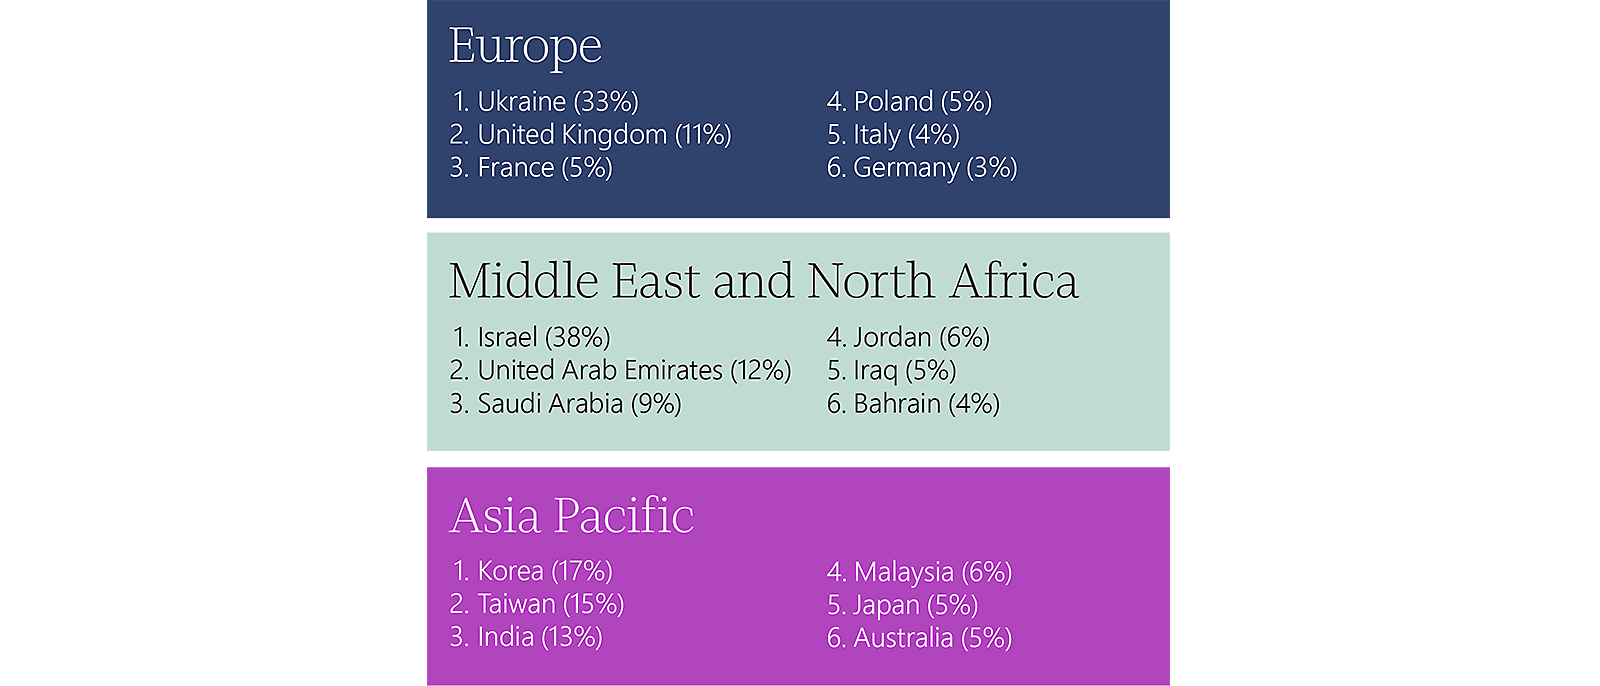 1-Datos geográficos: Europa - 4, Polonia - 4, Oriente Medio y Norte de África - 2,2, Asia Pacífico - 2, Wenc - 61